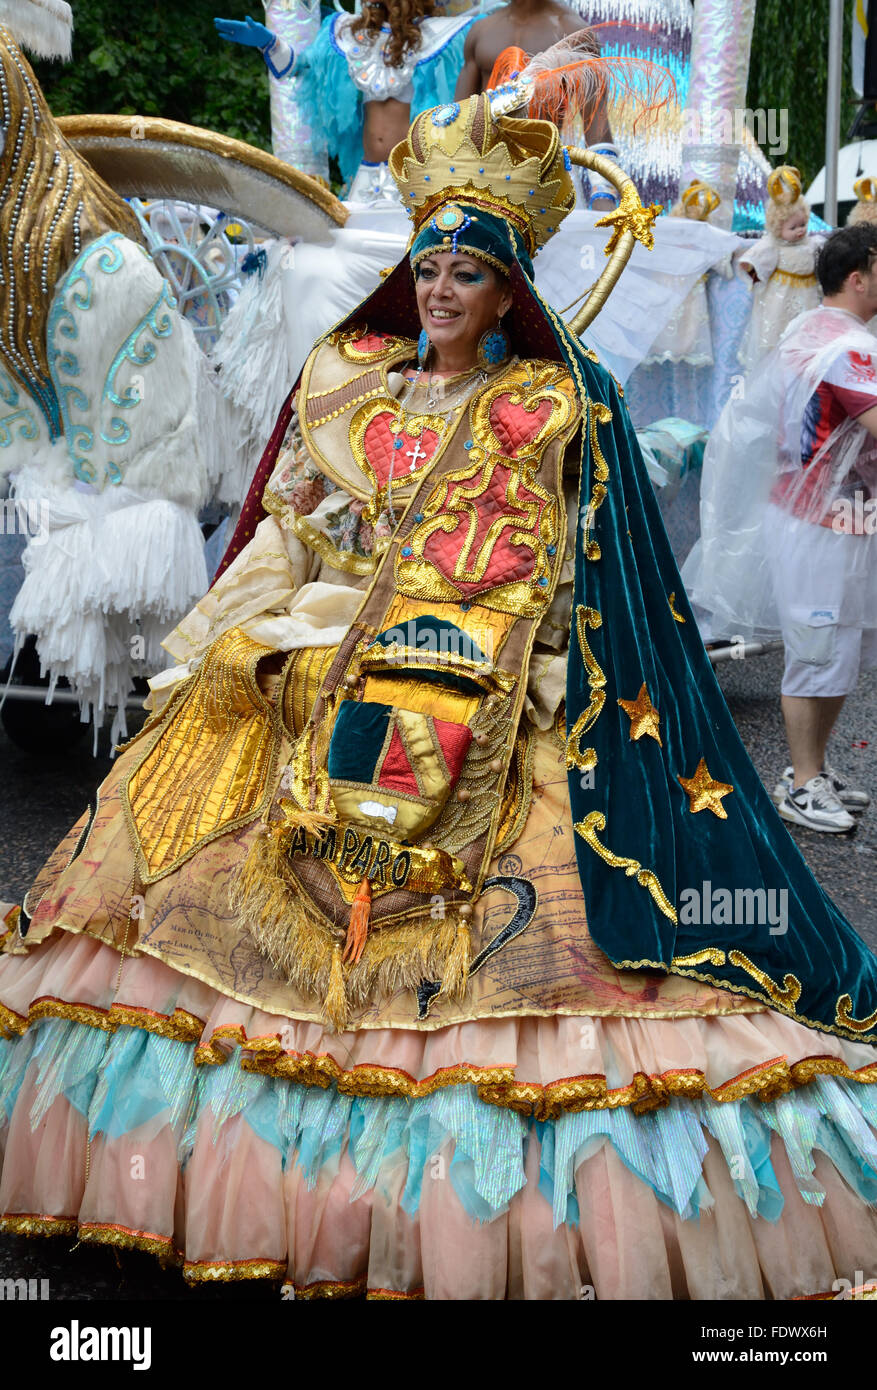 Dame en robe vintage, à Notting Hill Carnival. Londres, Angleterre. Banque D'Images